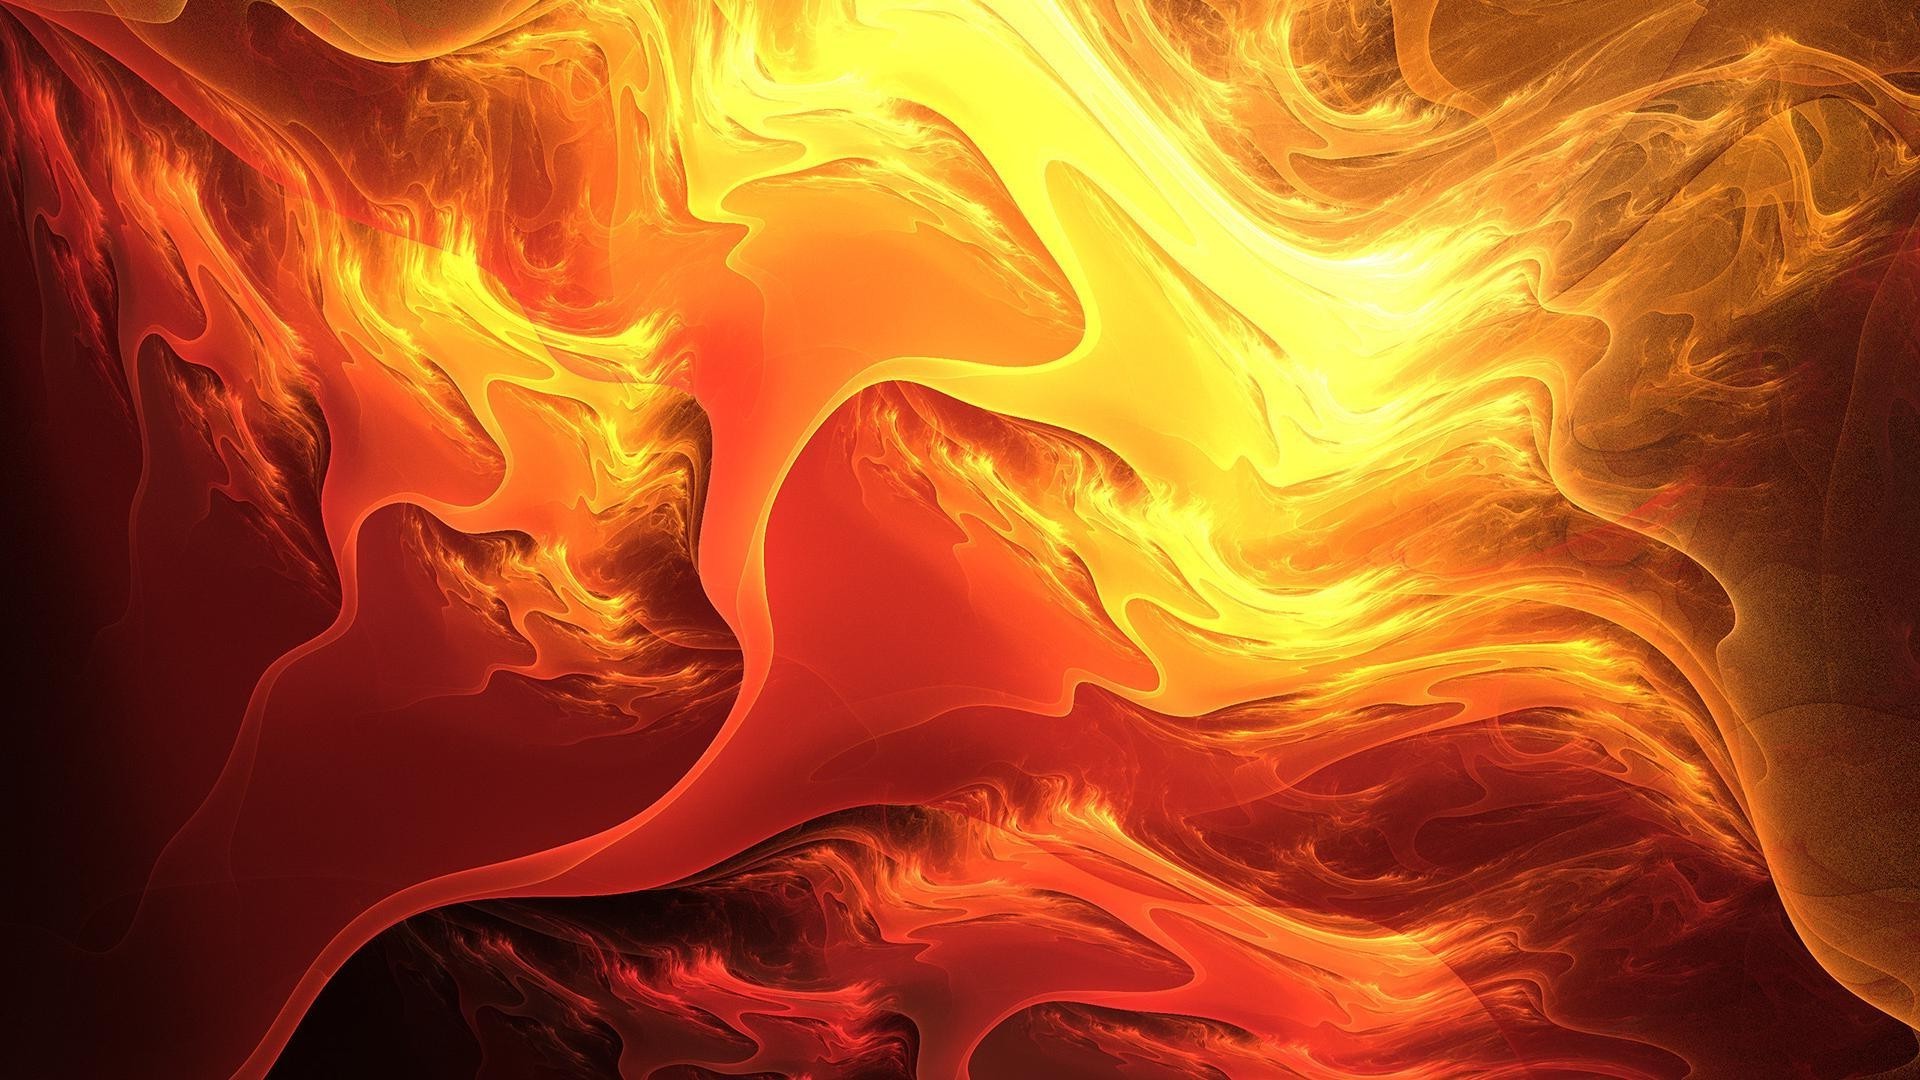 текстуры пламя энергии горячая аннотация тепло опасность движения дым обои волна сюрреалистично хаос фантазия свет динамические фрактал сожгли график дизайн